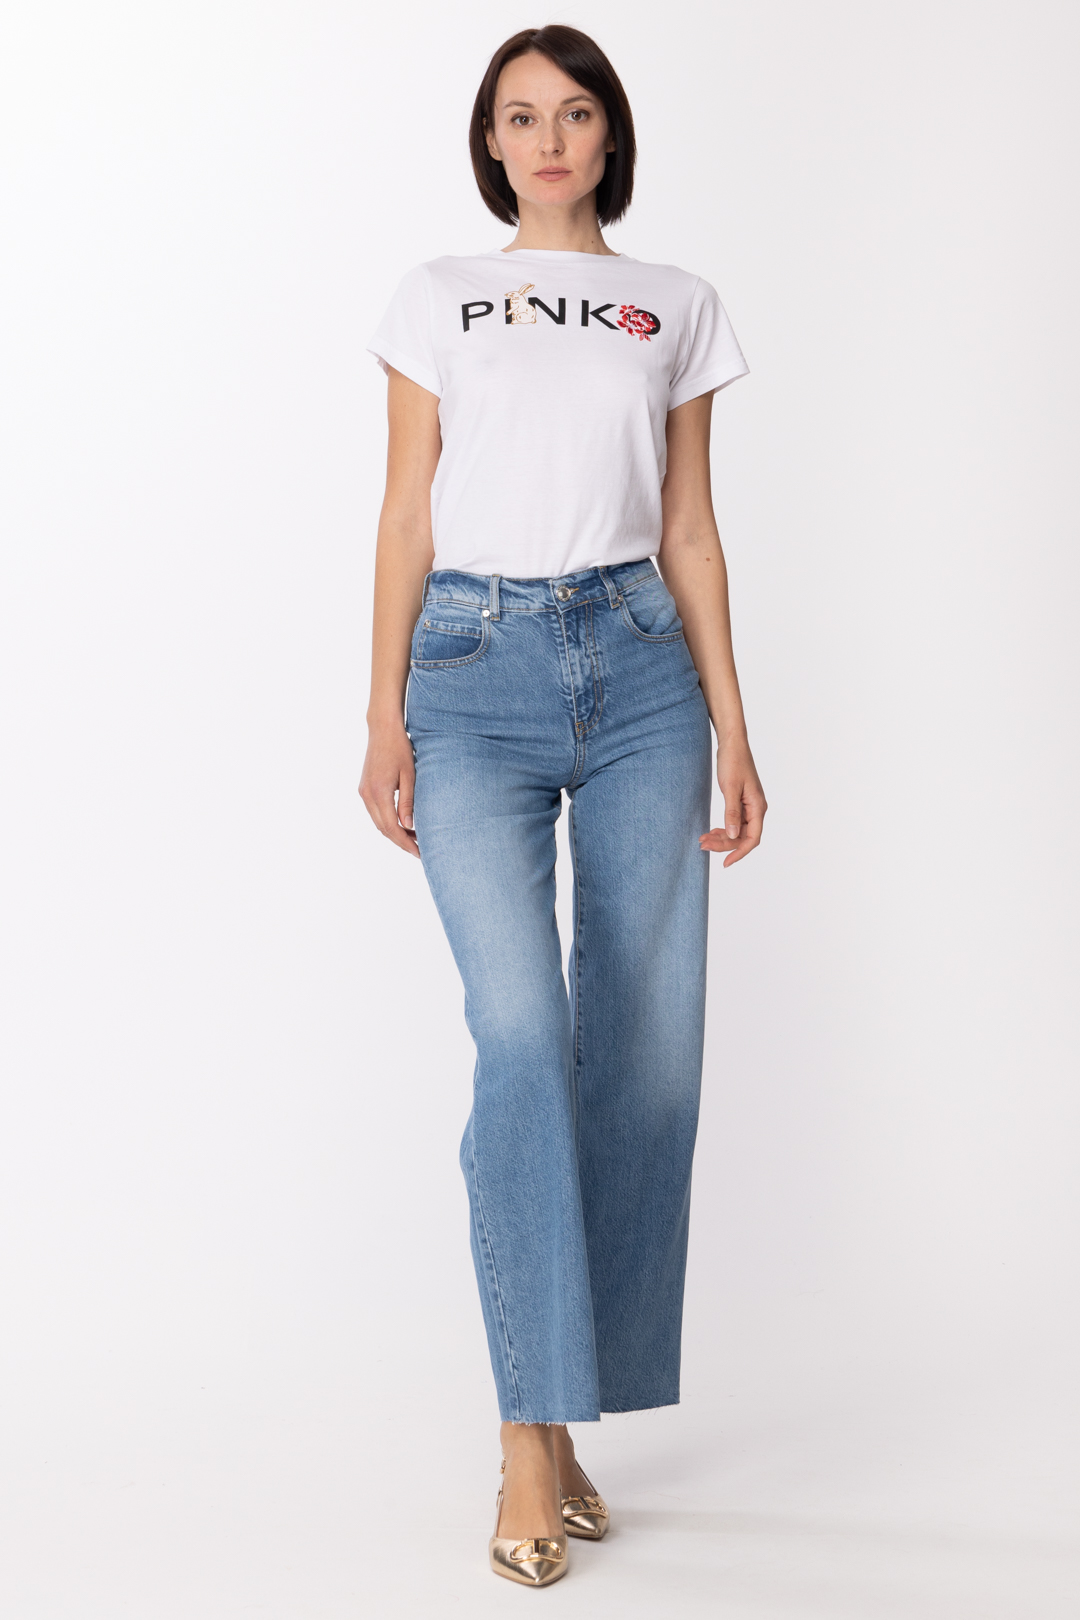 Vista previa: Pinko Jeans de pernera ancha y tiro alto LAVAGGIO STONE MEDIO CHIARO